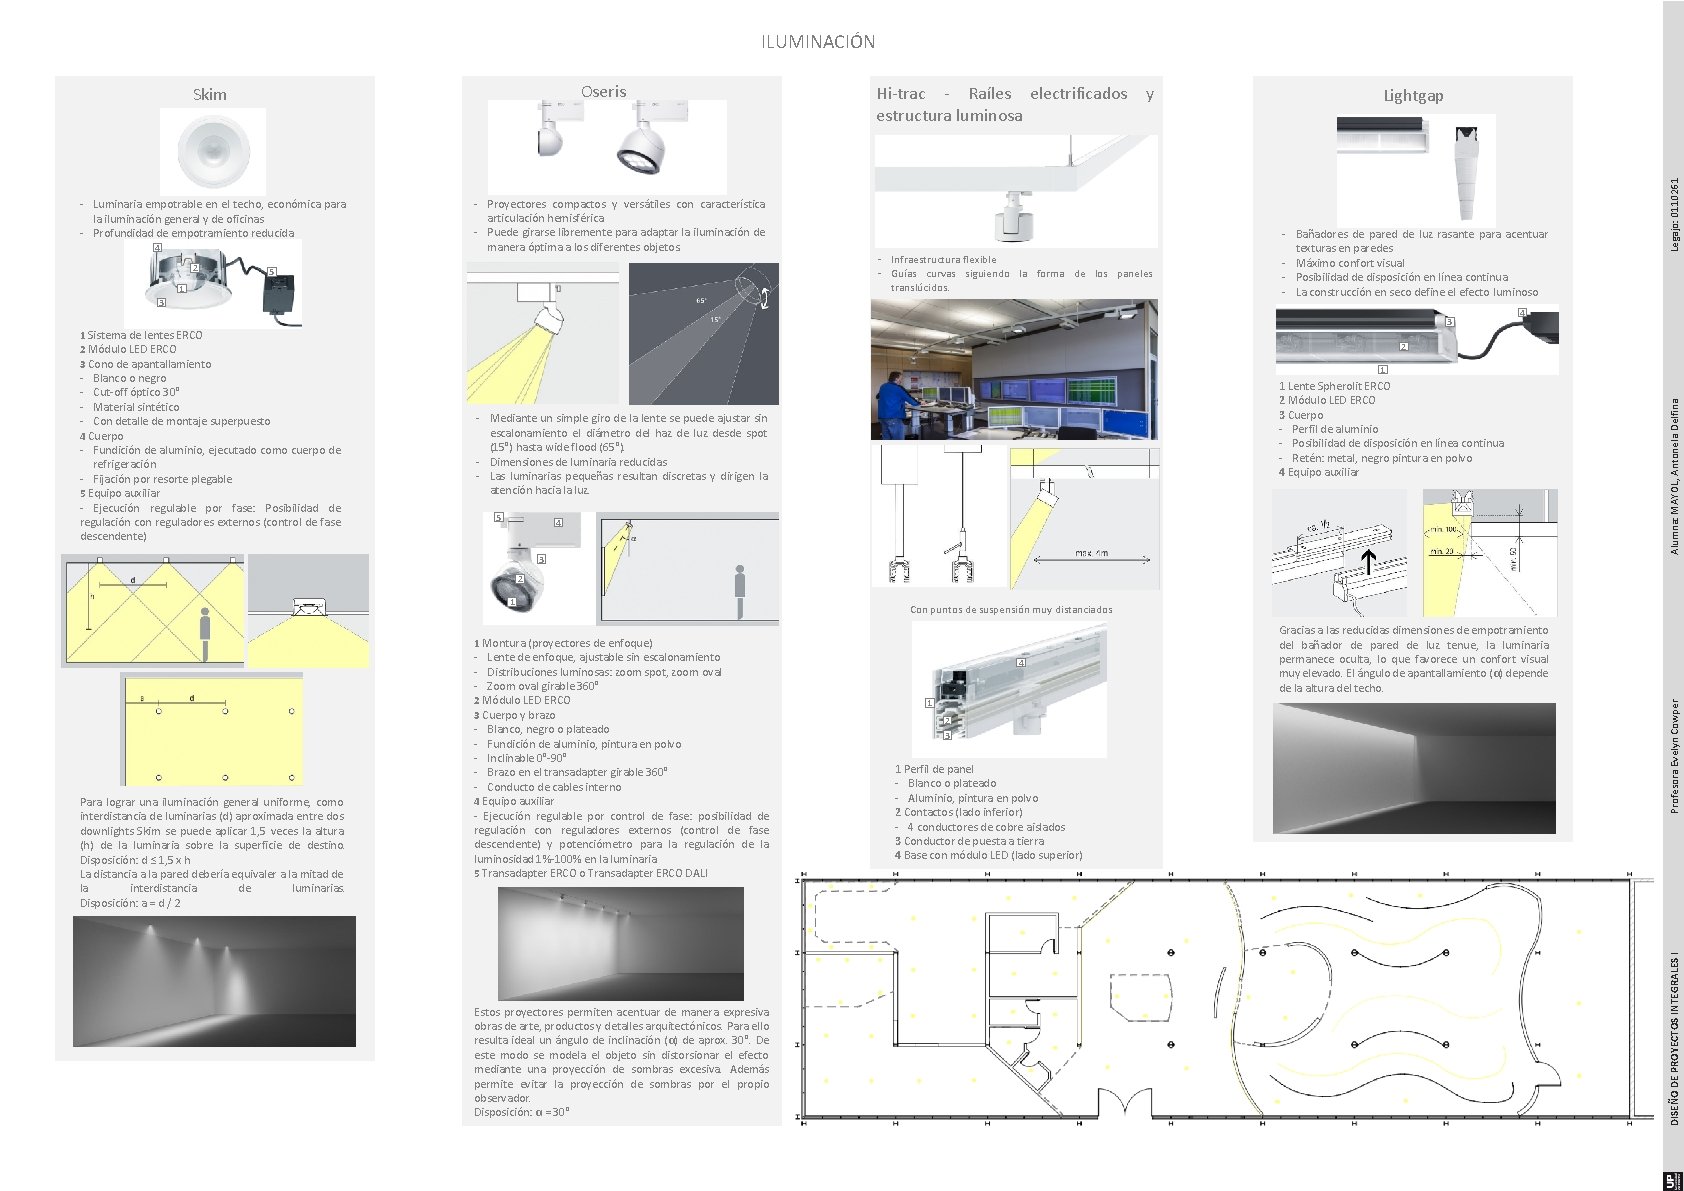 ILUMINACIÓN 4 2 - Proyectores compactos y versátiles con característica articulación hemisférica - Puede